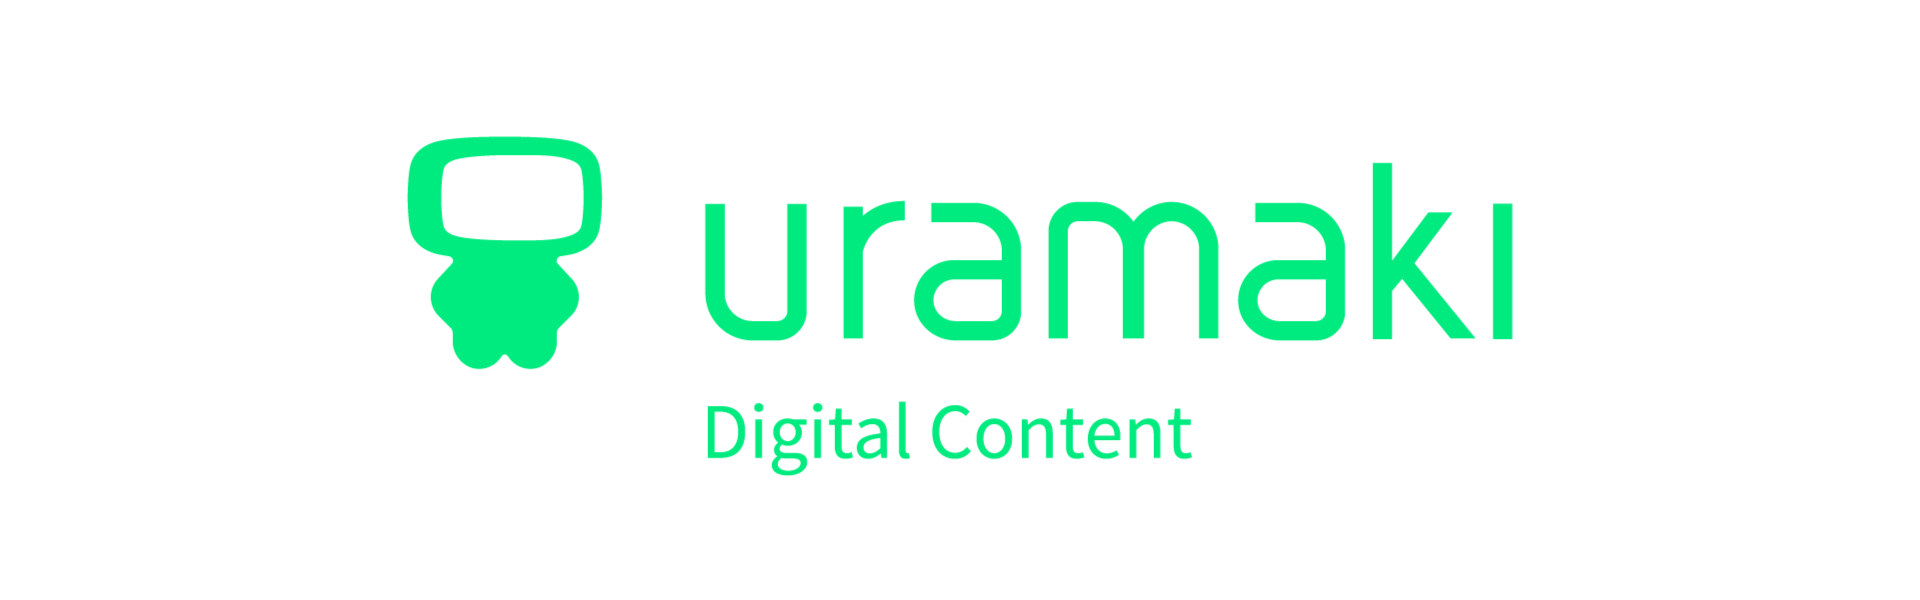 Uramaki | Digital Content